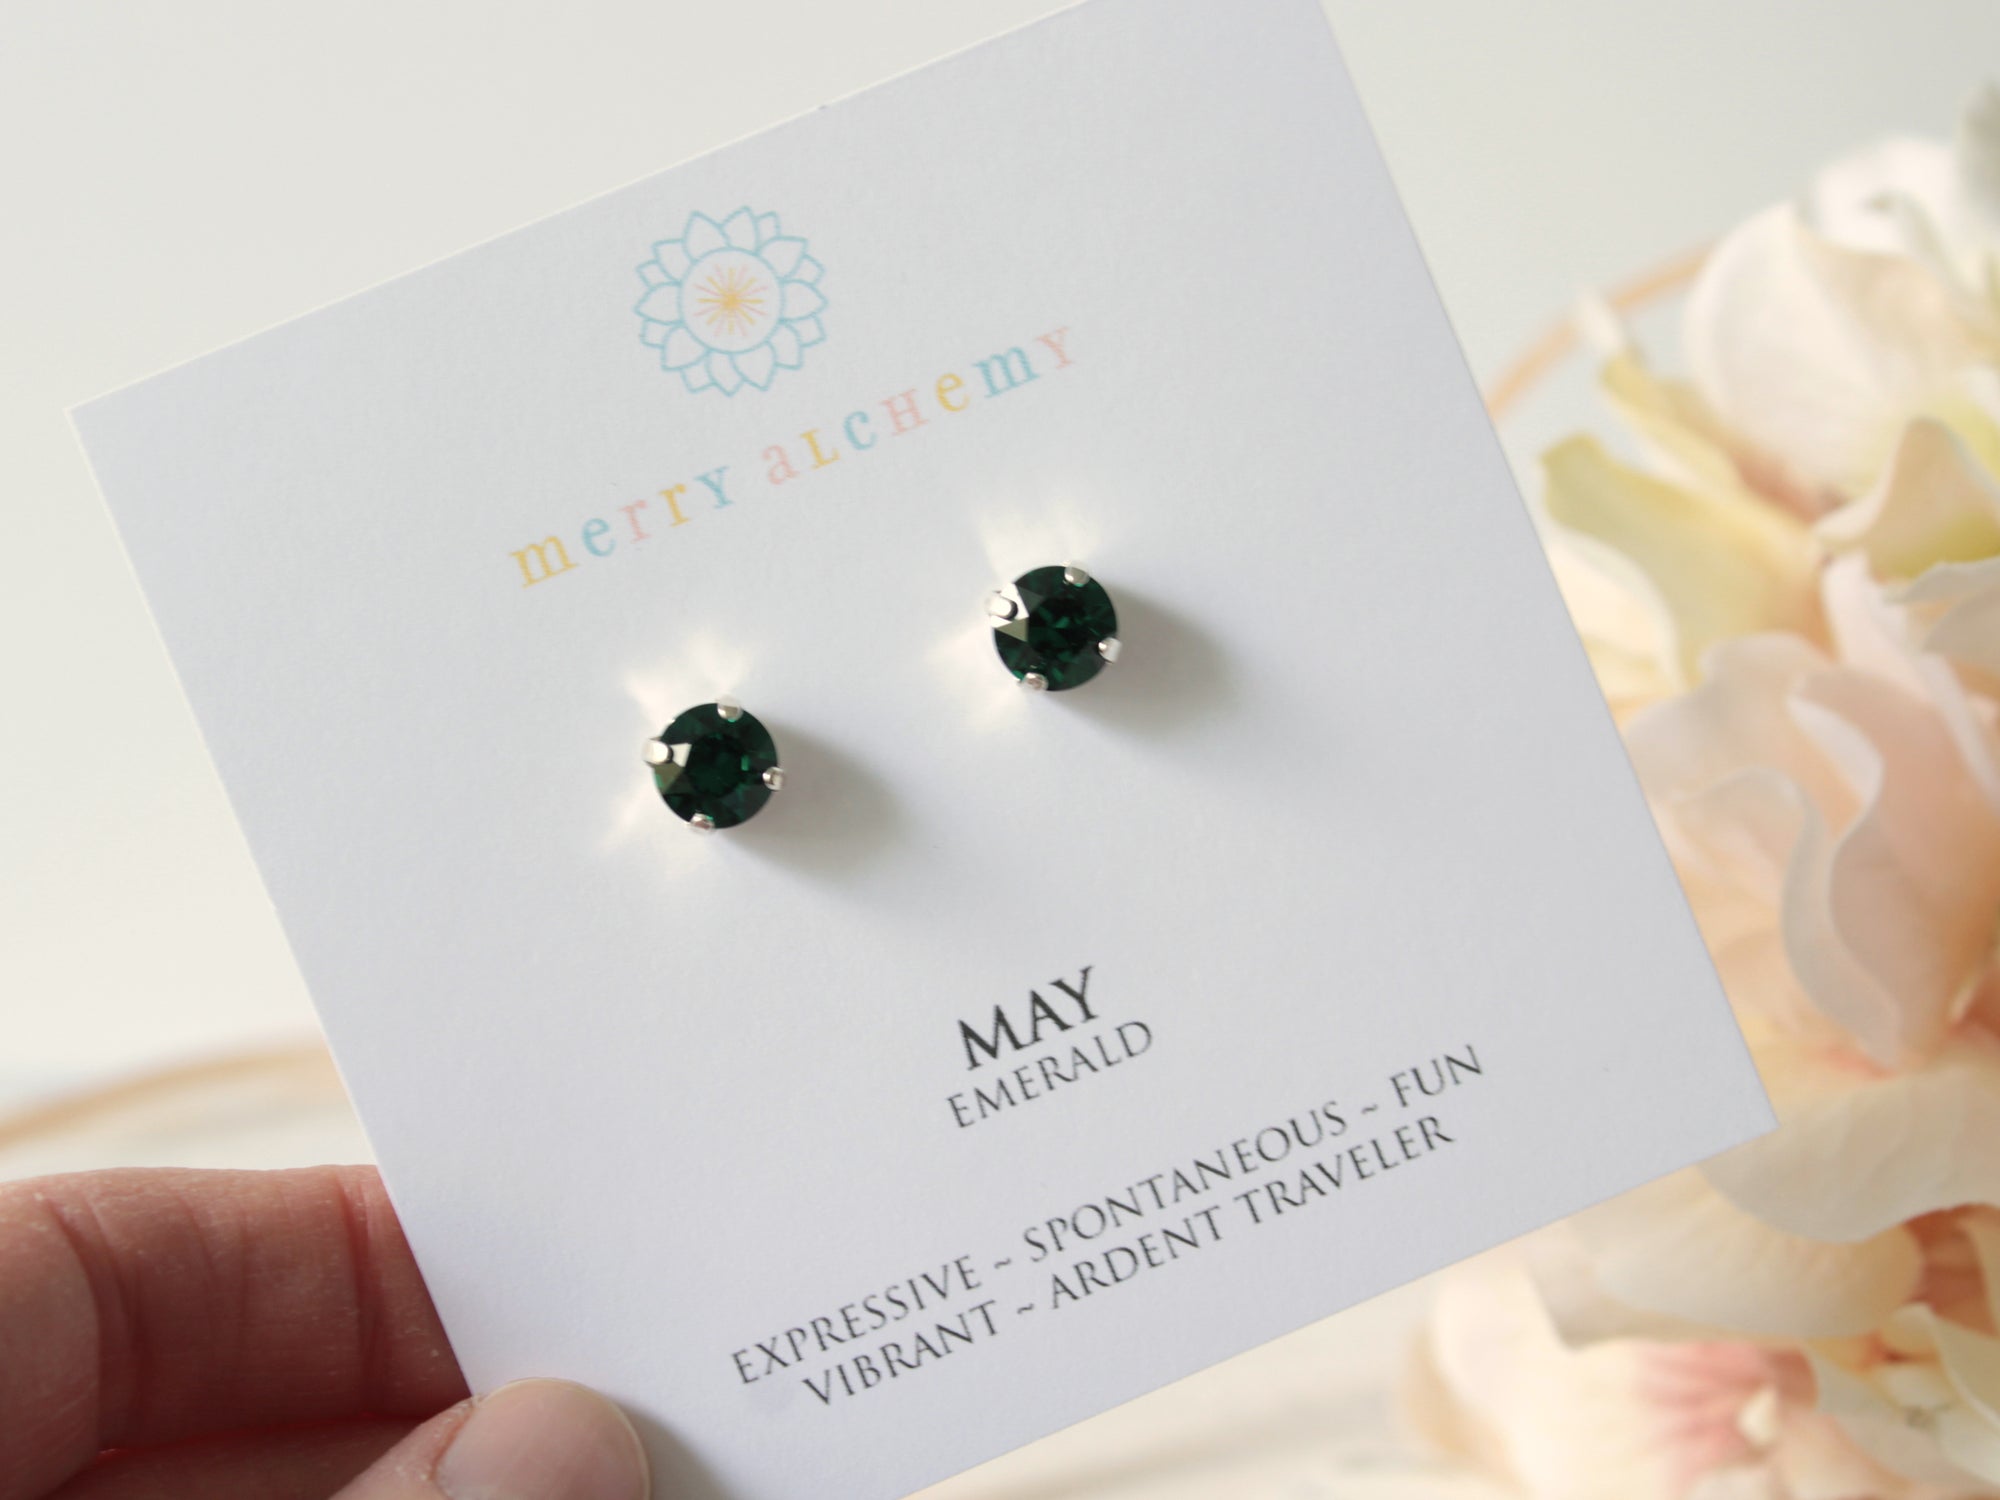 May Birthstone Stud Earrings in Emerald